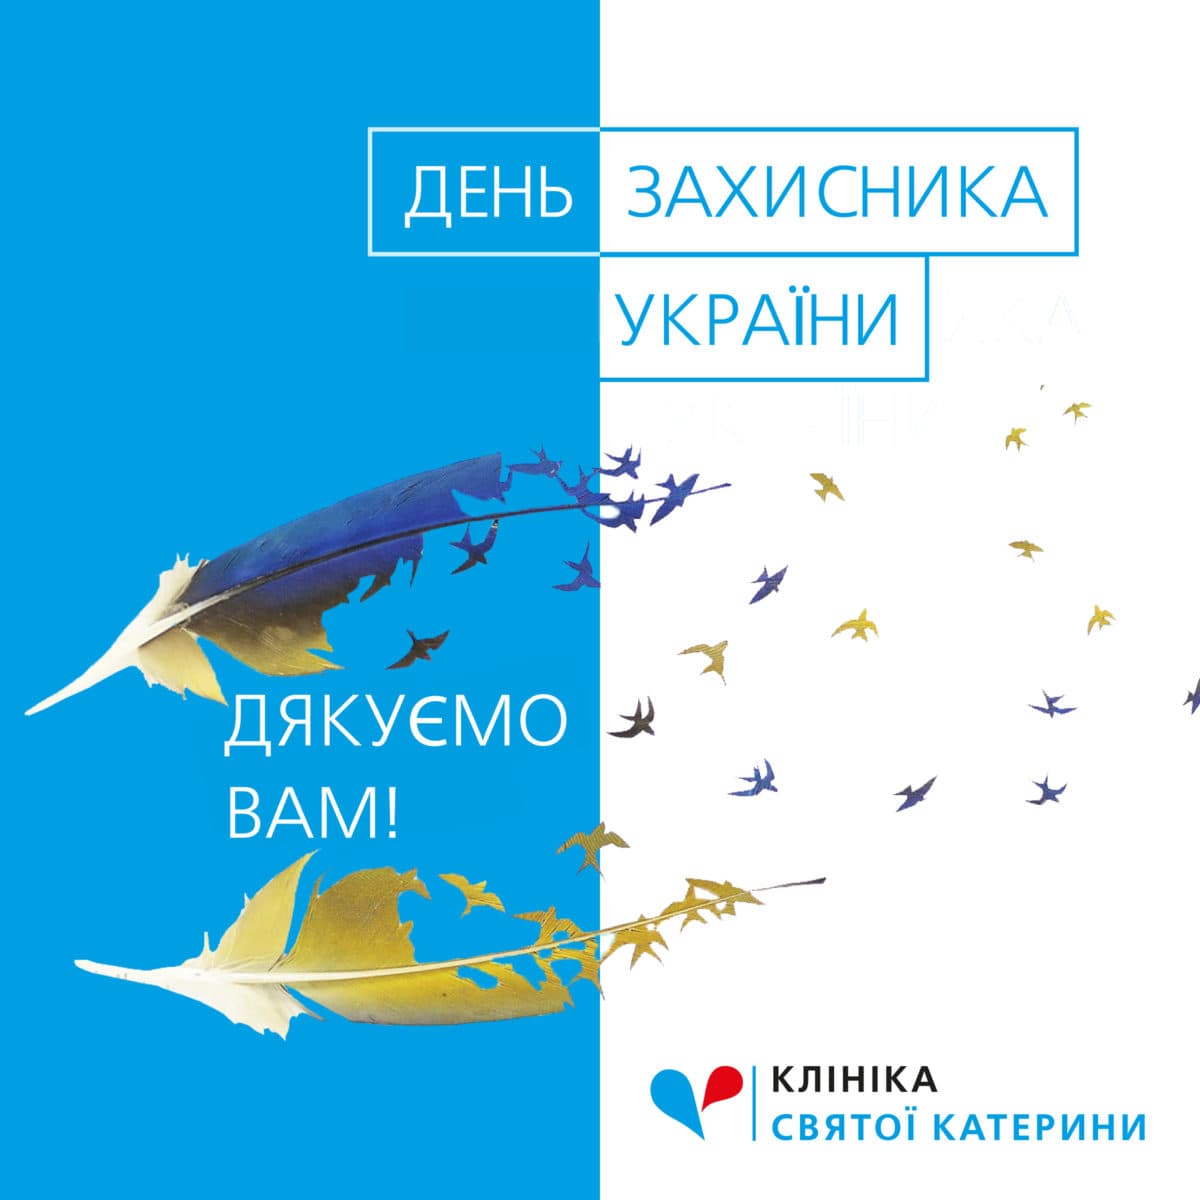 Вітаємо з Днем захисника України! - 82 - svekaterina.ua